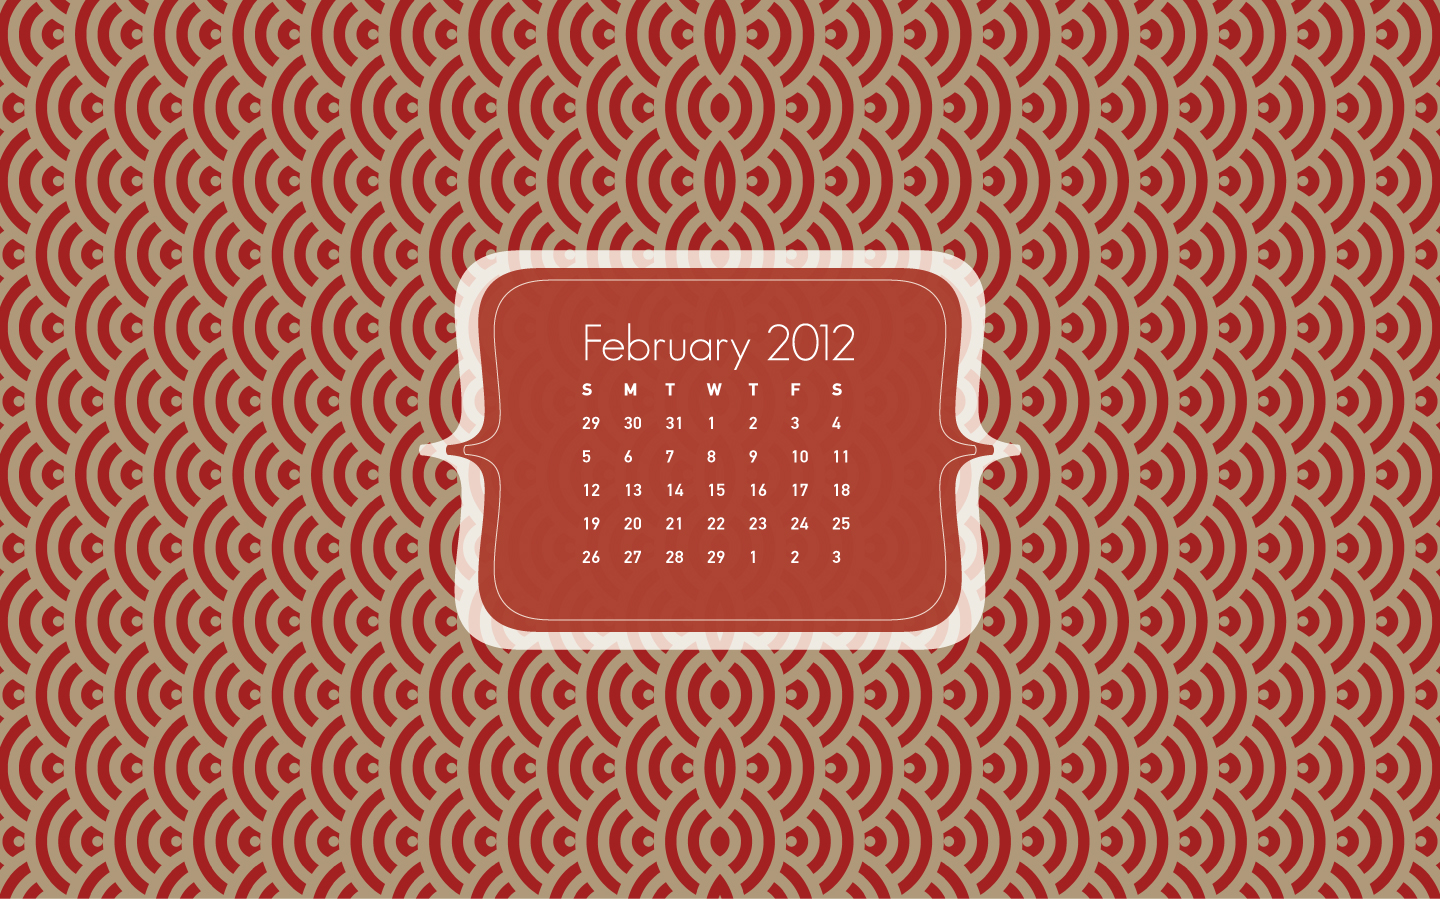 http://4.bp.blogspot.com/-9KfYUmnbK2o/Tyx2dUX2rPI/AAAAAAAAFRE/NSMrhzQ7nWs/s1600/Feb_calendar_wallpaper.jpg